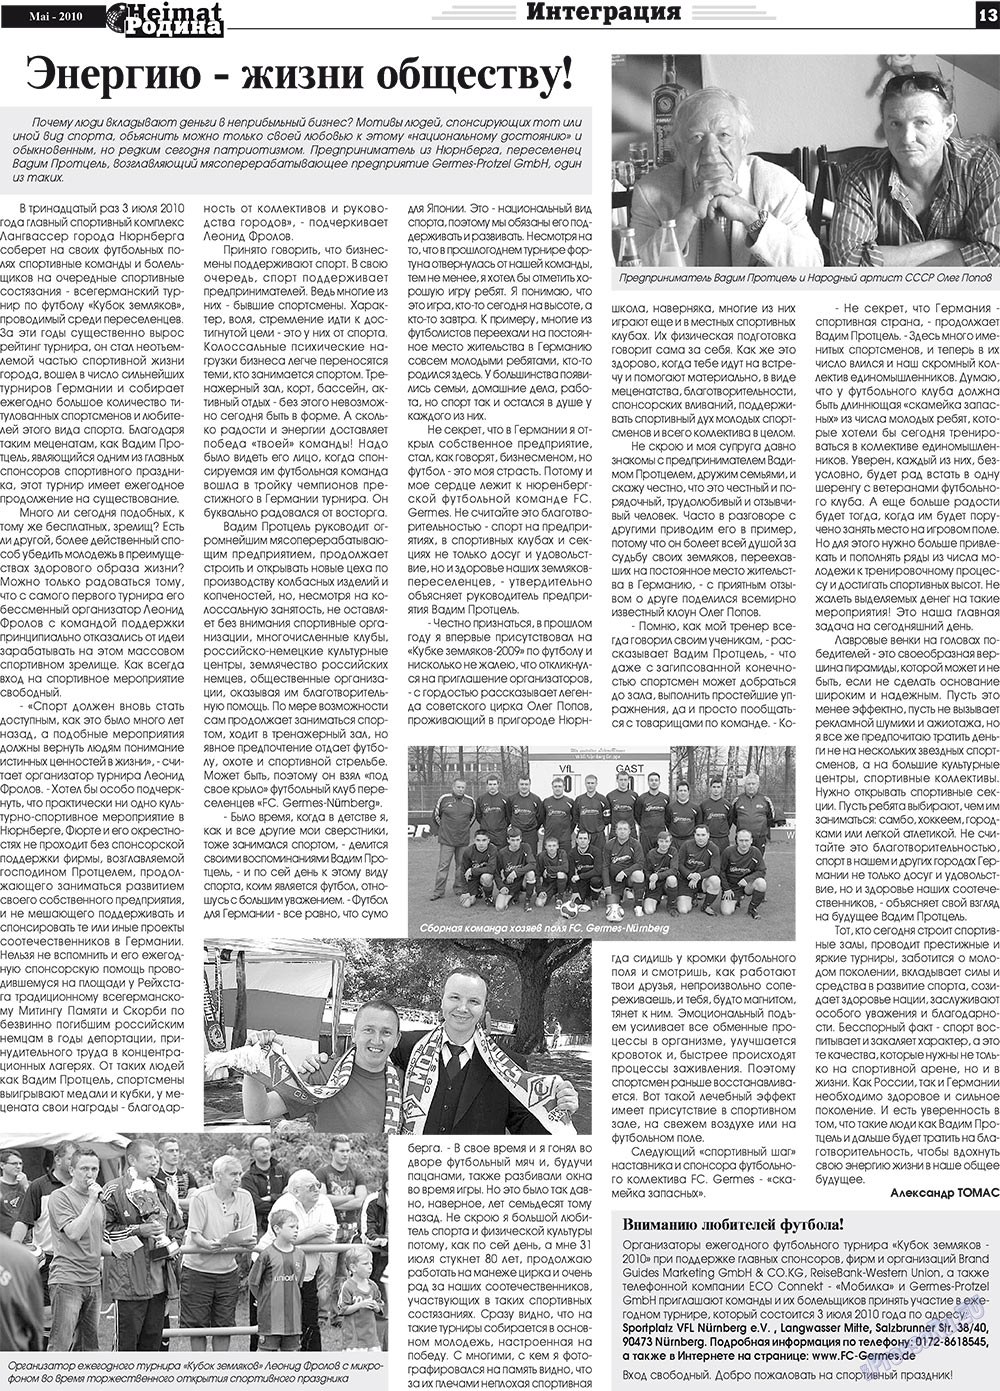 Heimat-Родина (газета). 2010 год, номер 5, стр. 13